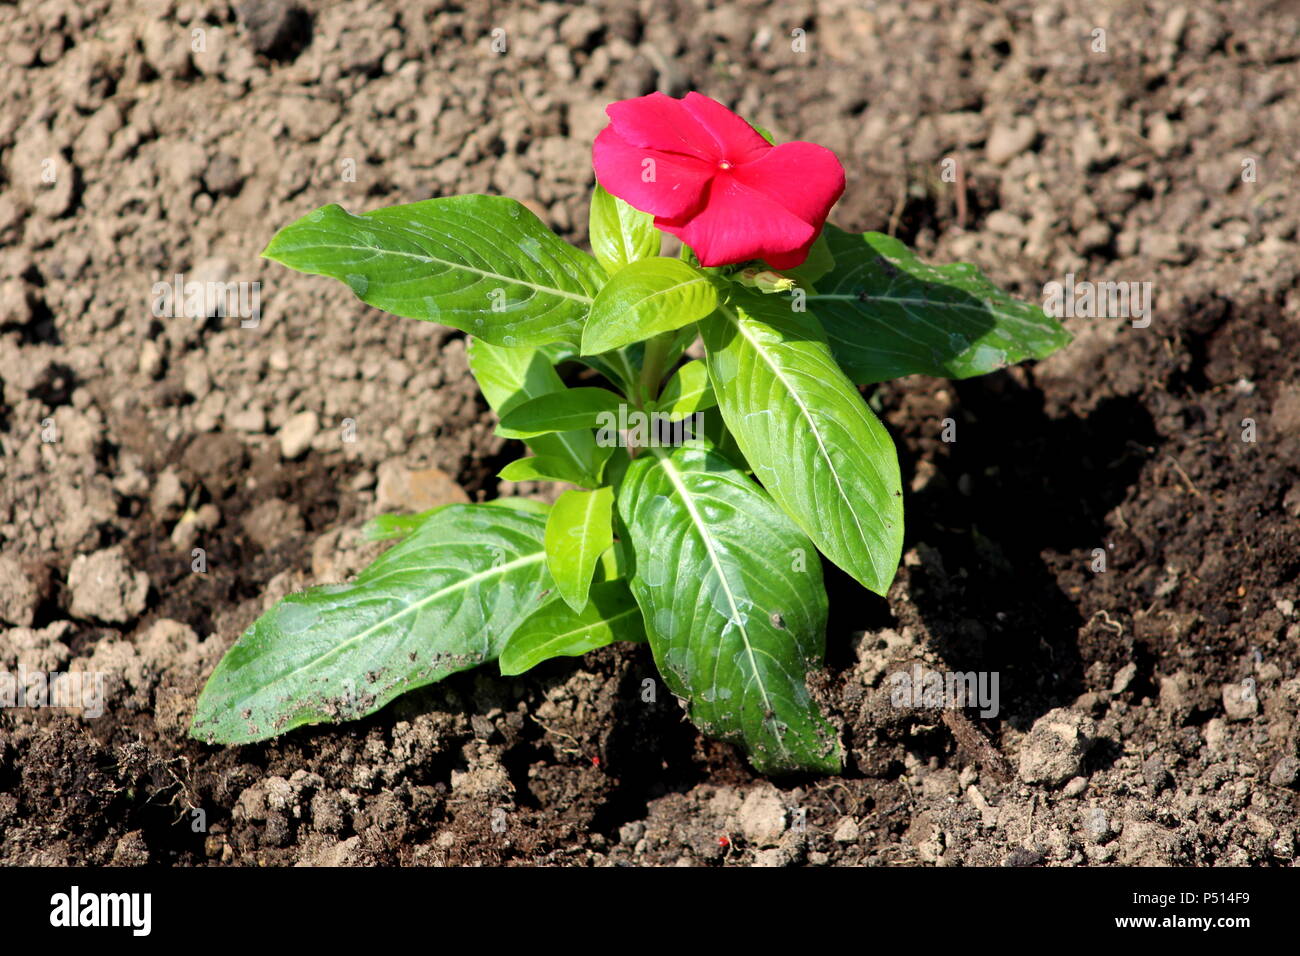 Pervenche de Madagascar ou Catharanthus roseus ou pervenche rose ou pervenche rose fleur rouge vif avec de grosses feuilles vertes et de l'eau fraîchement planté Banque D'Images